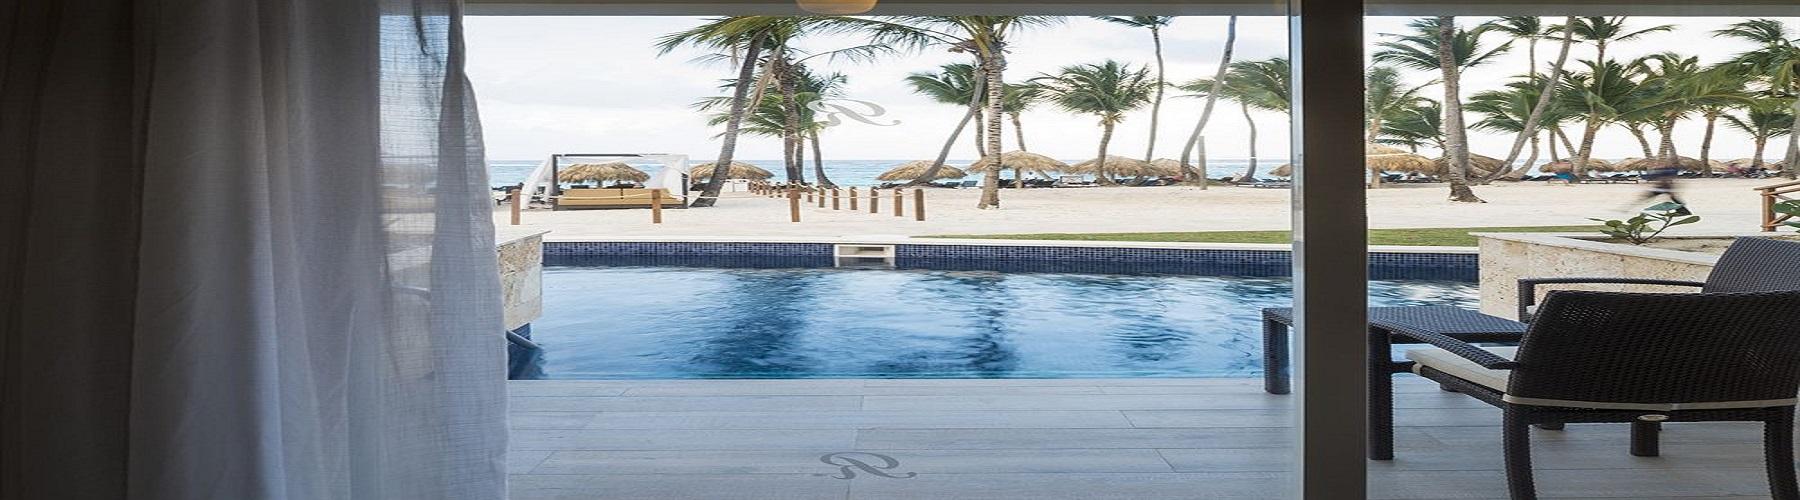 Забронировать отель Royalton Punta Cana Resort and Casino 